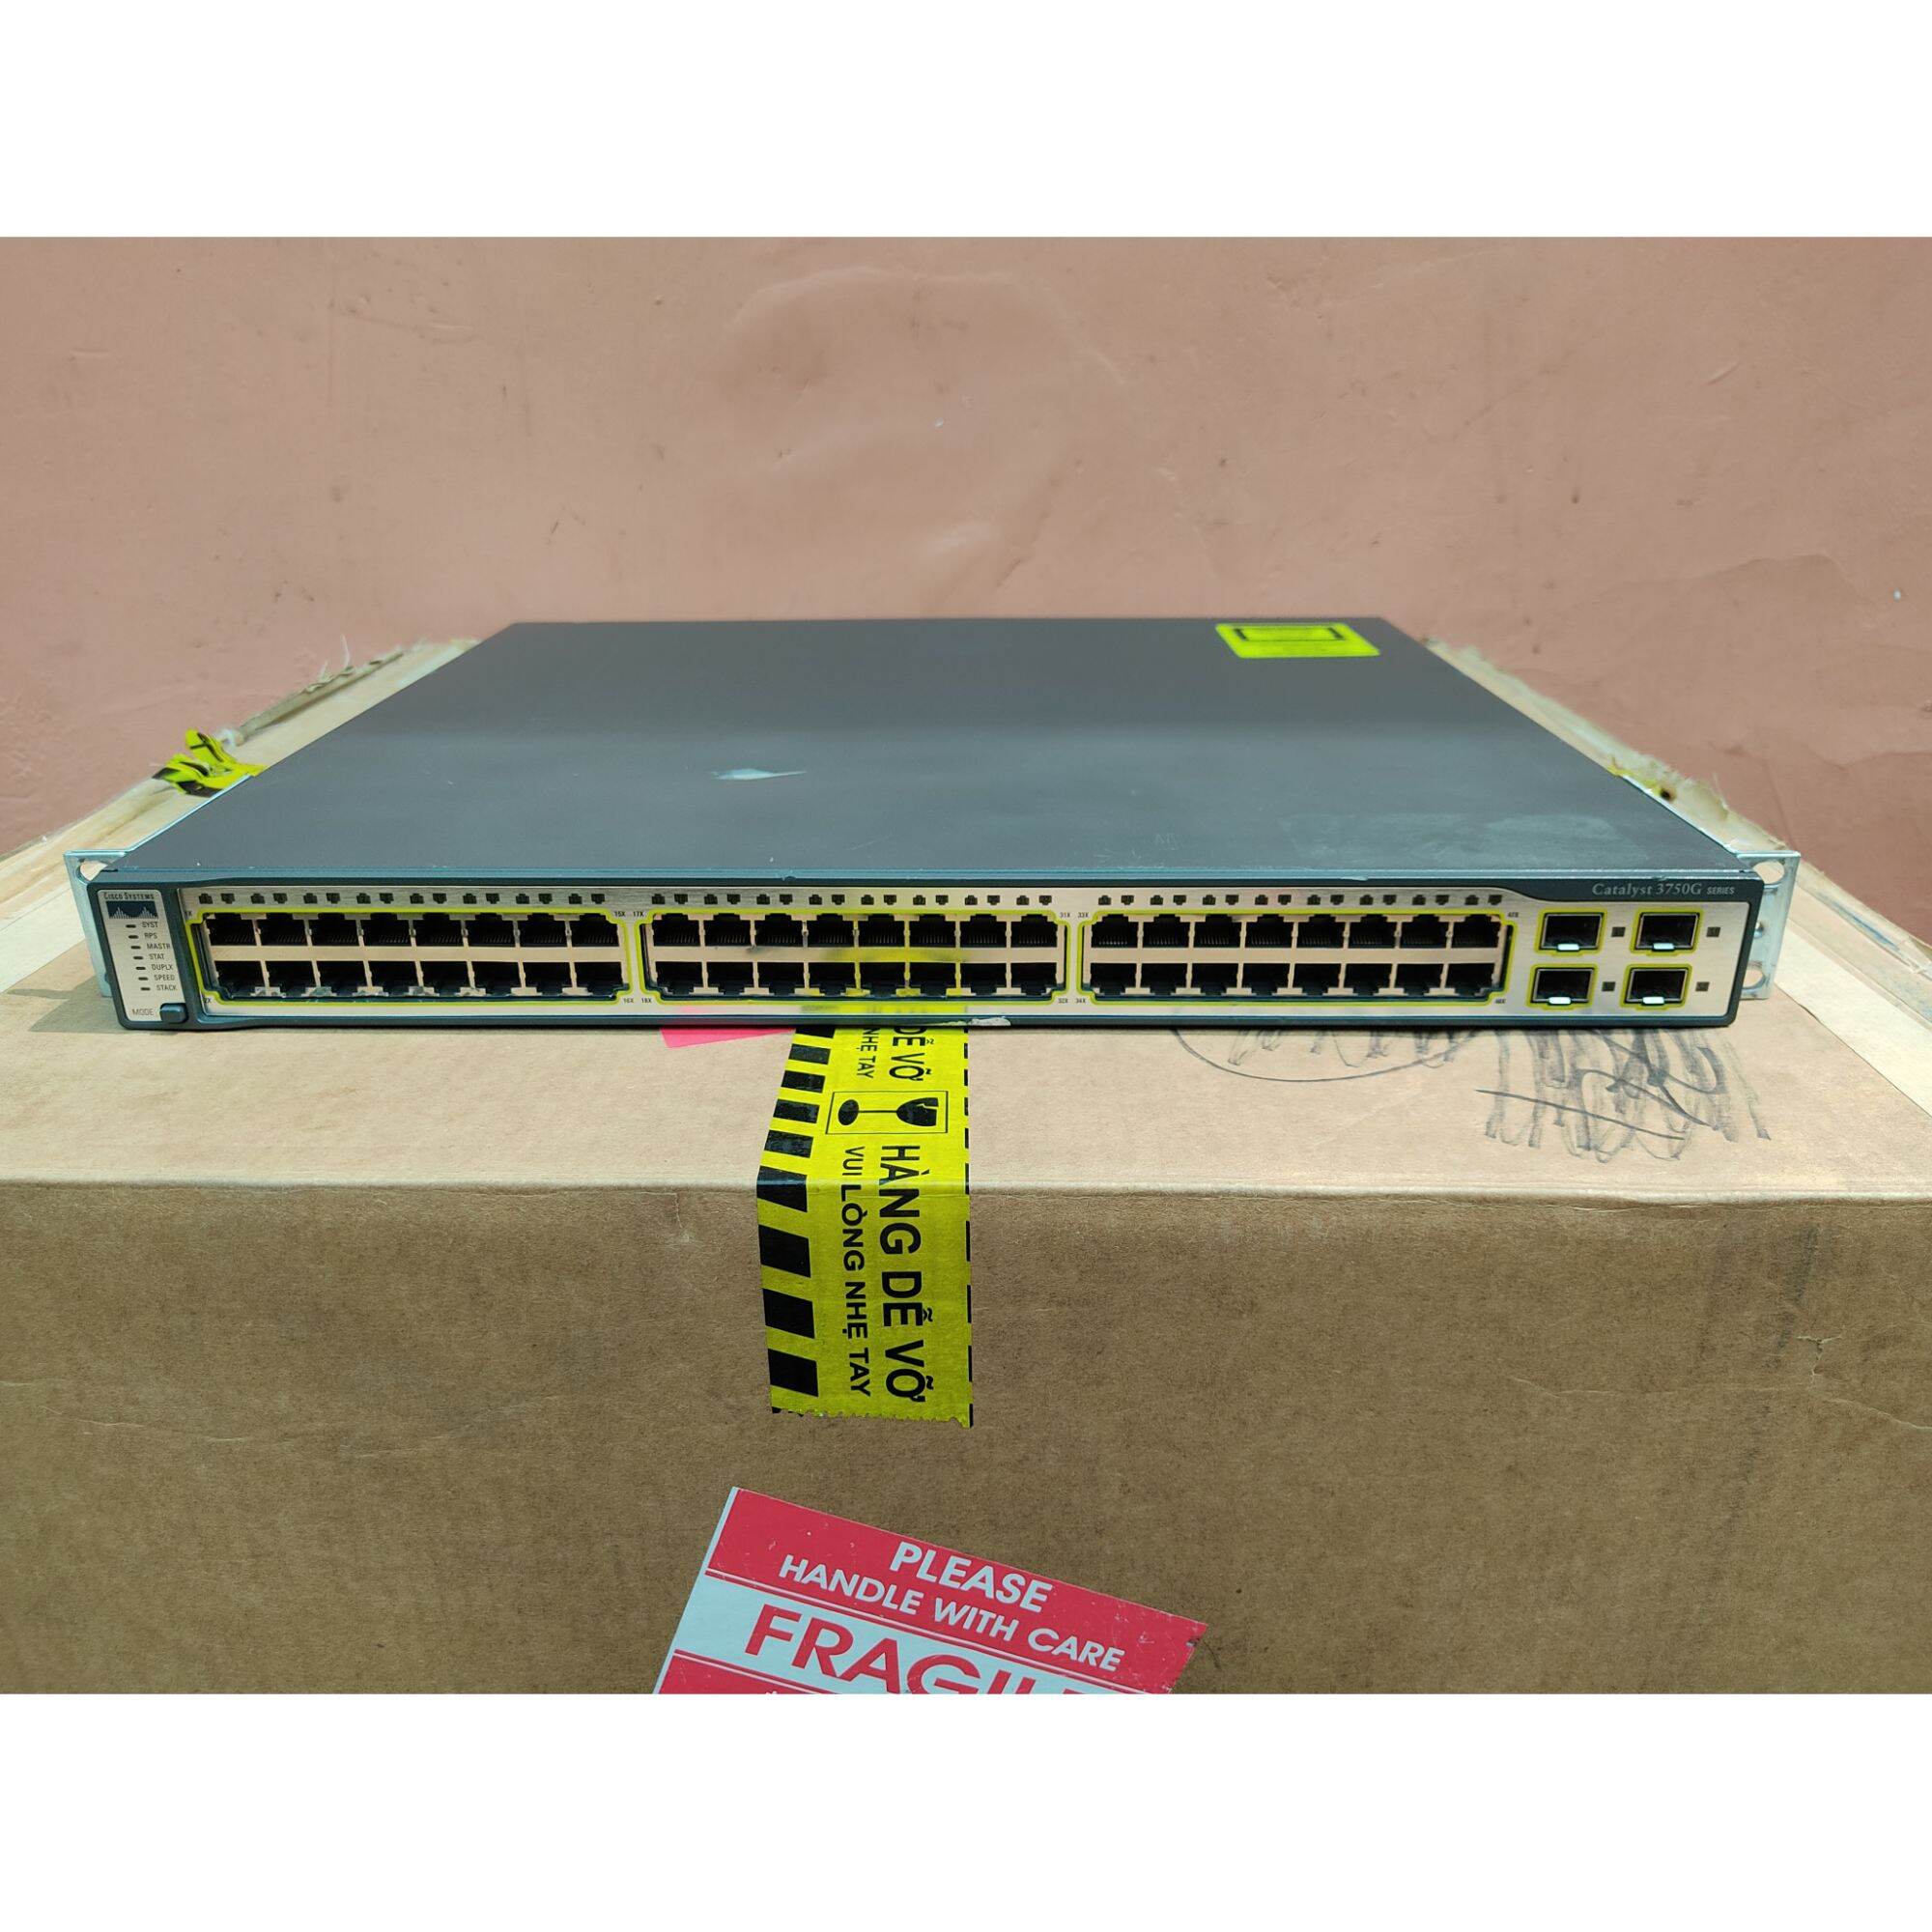 Chuyển Mạch Lớp 3 - Cisco 48 Cổng Gigabit 3750G-48TS - 4 Uplink Quang